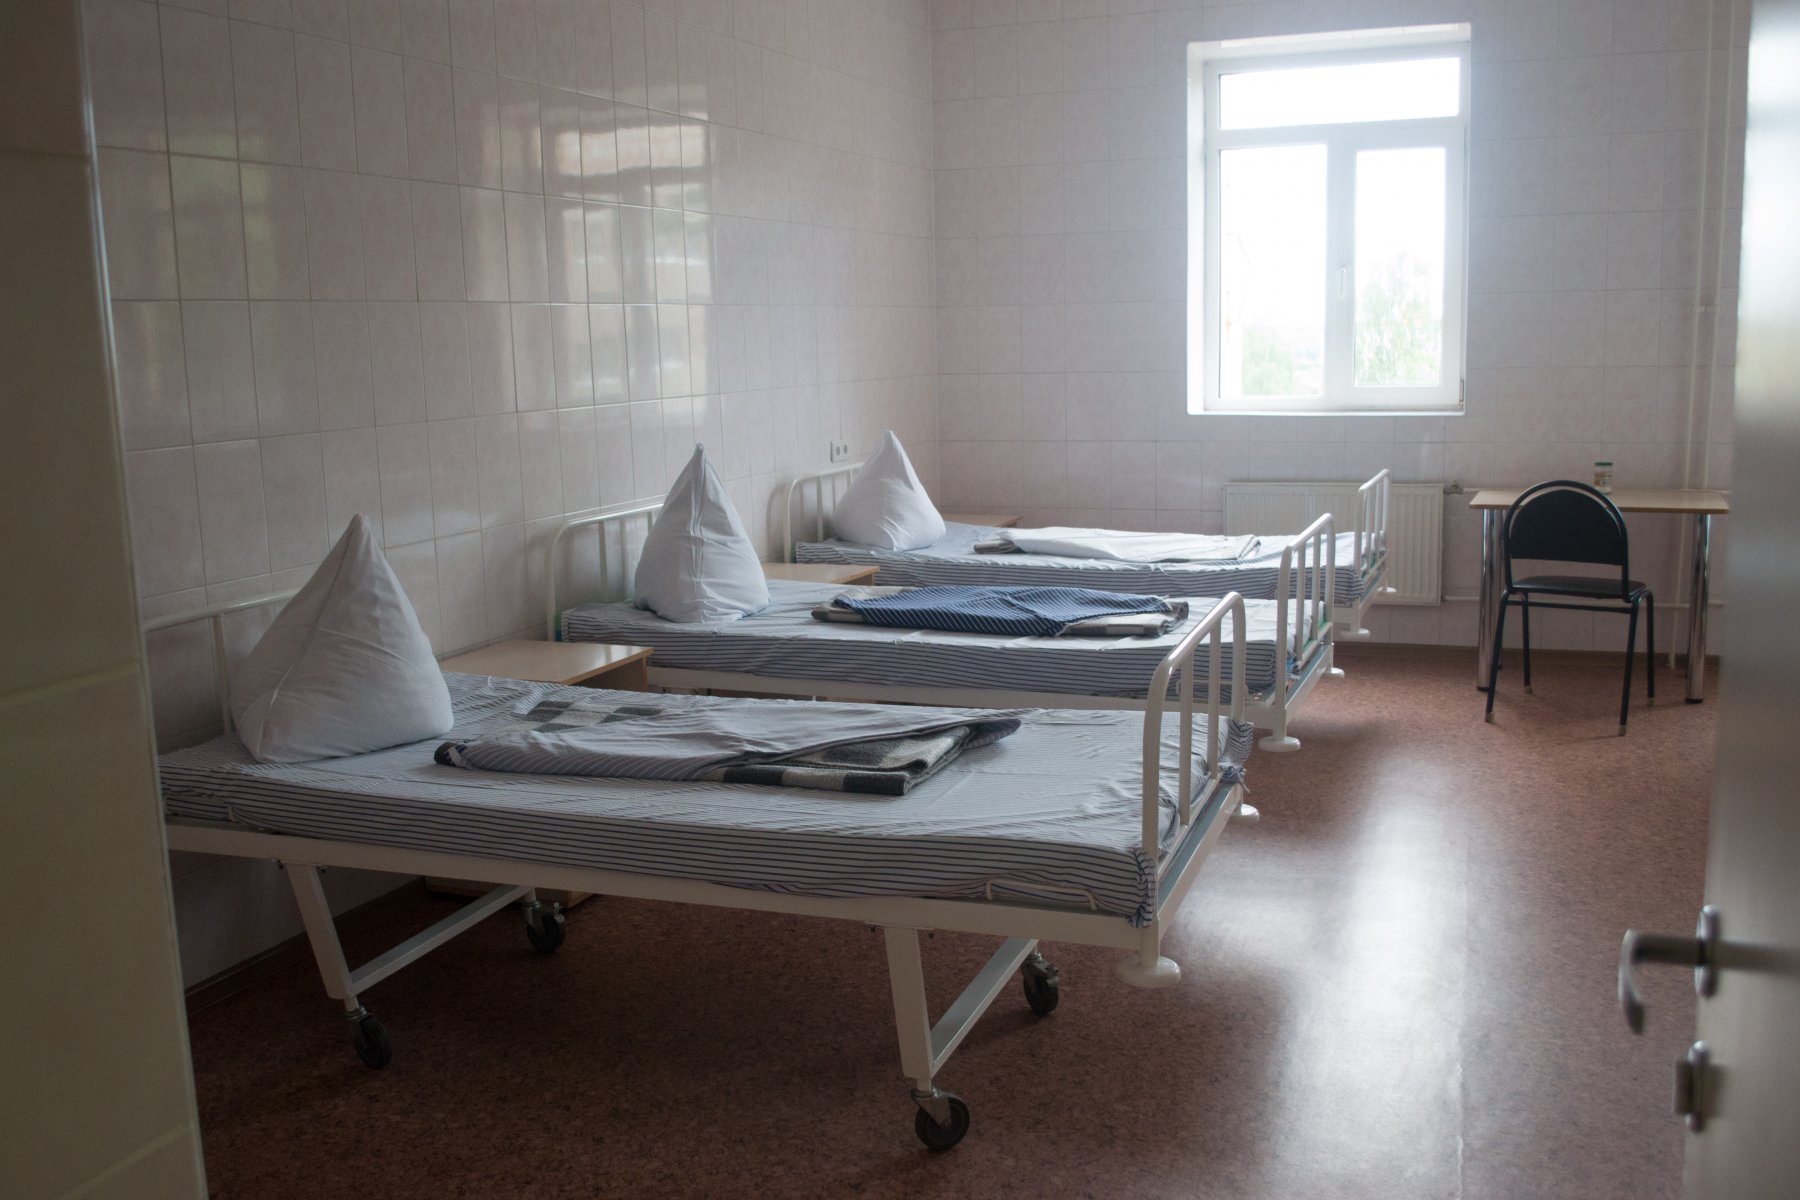 Сергиево-Посадская больница возвращается к плановой работе после пандемии коронавируса